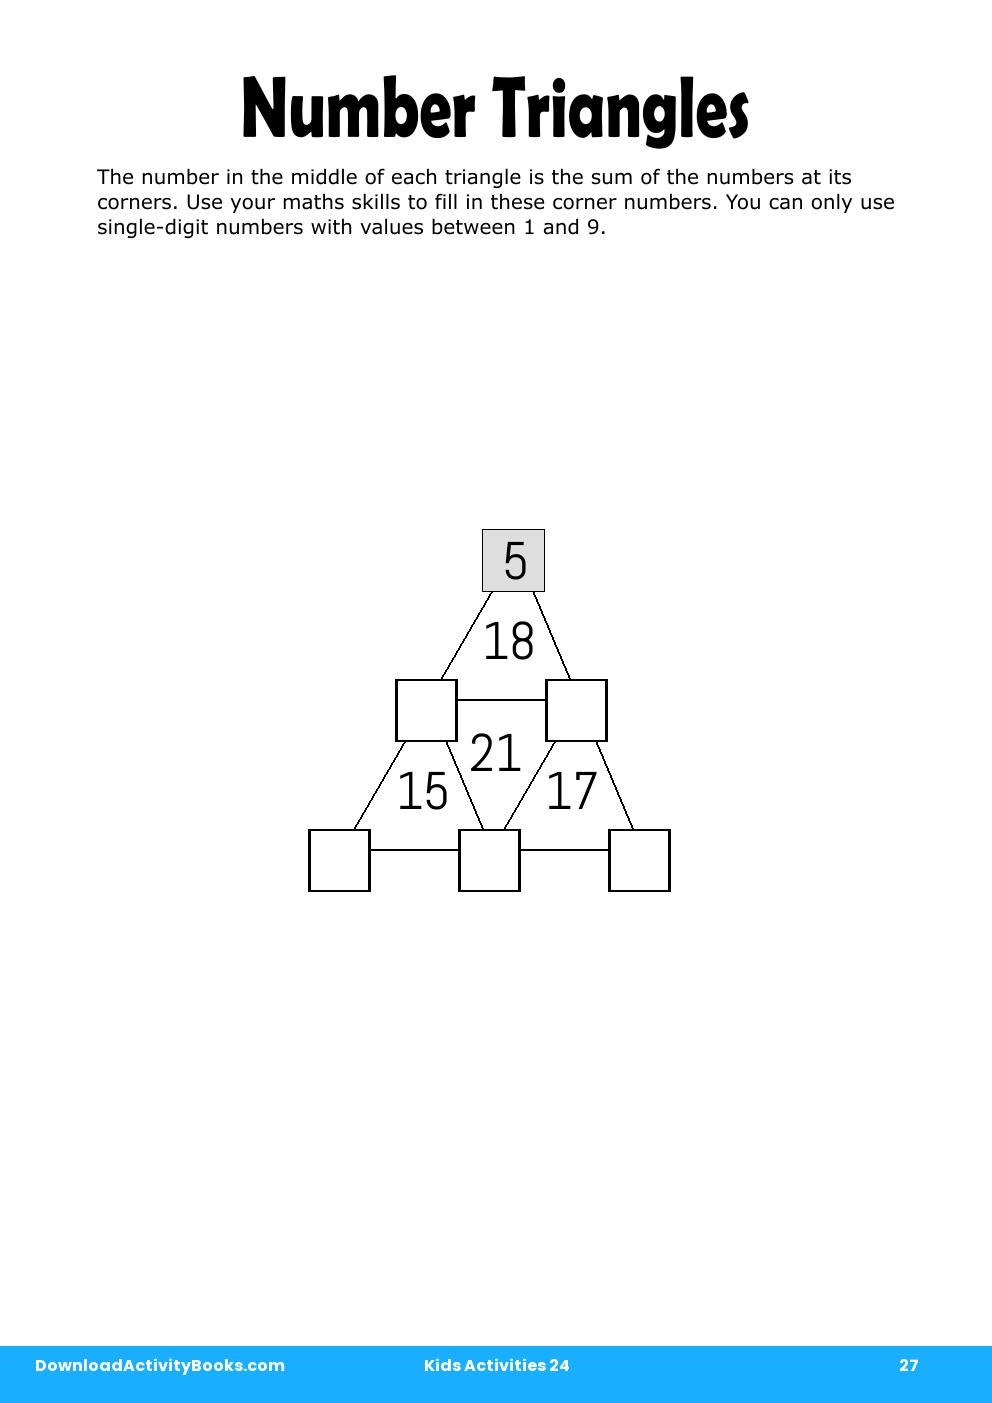 Number Triangles in Kids Activities 24